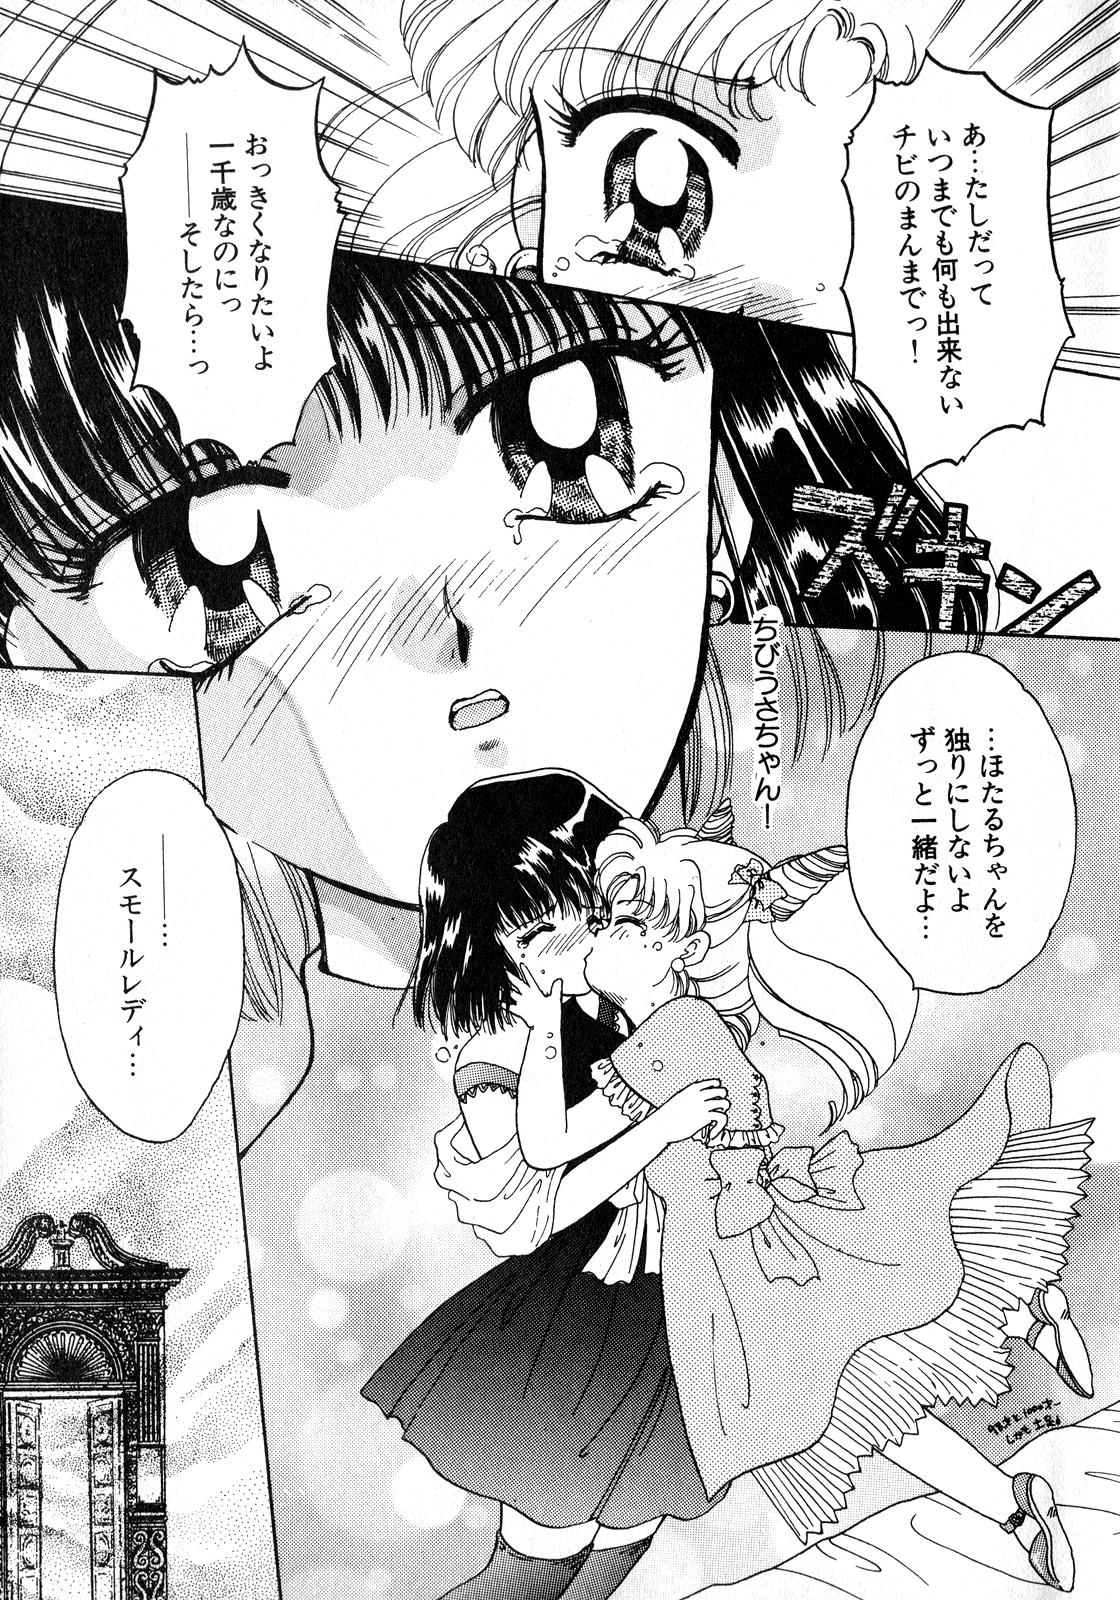 Boquete Lunatic Party 8 - Sailor moon Whores - Page 8